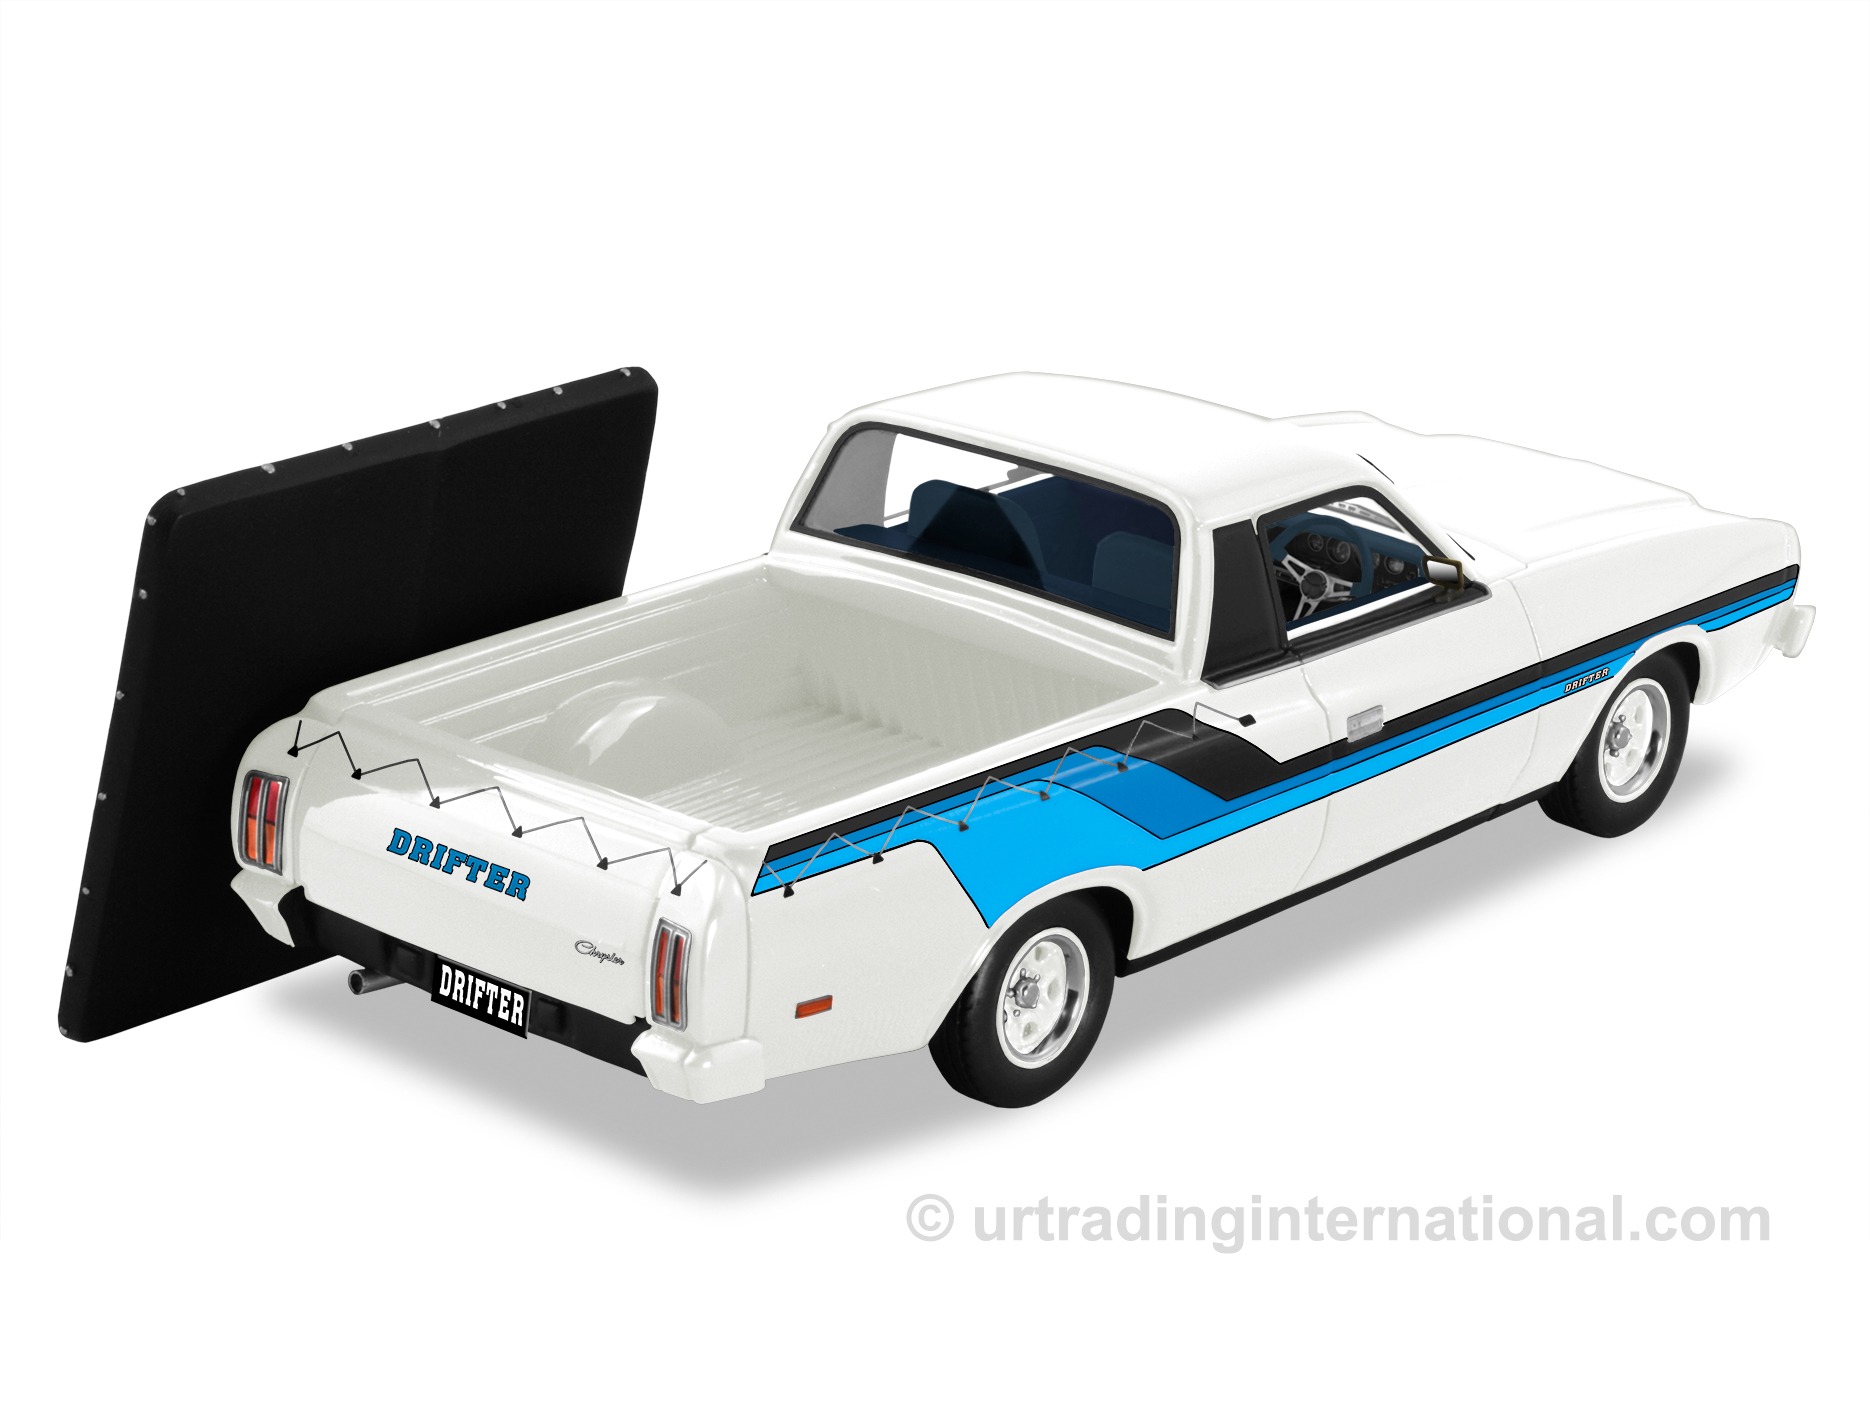 1977 Chrysler CL Drifter Ute – Alpine White